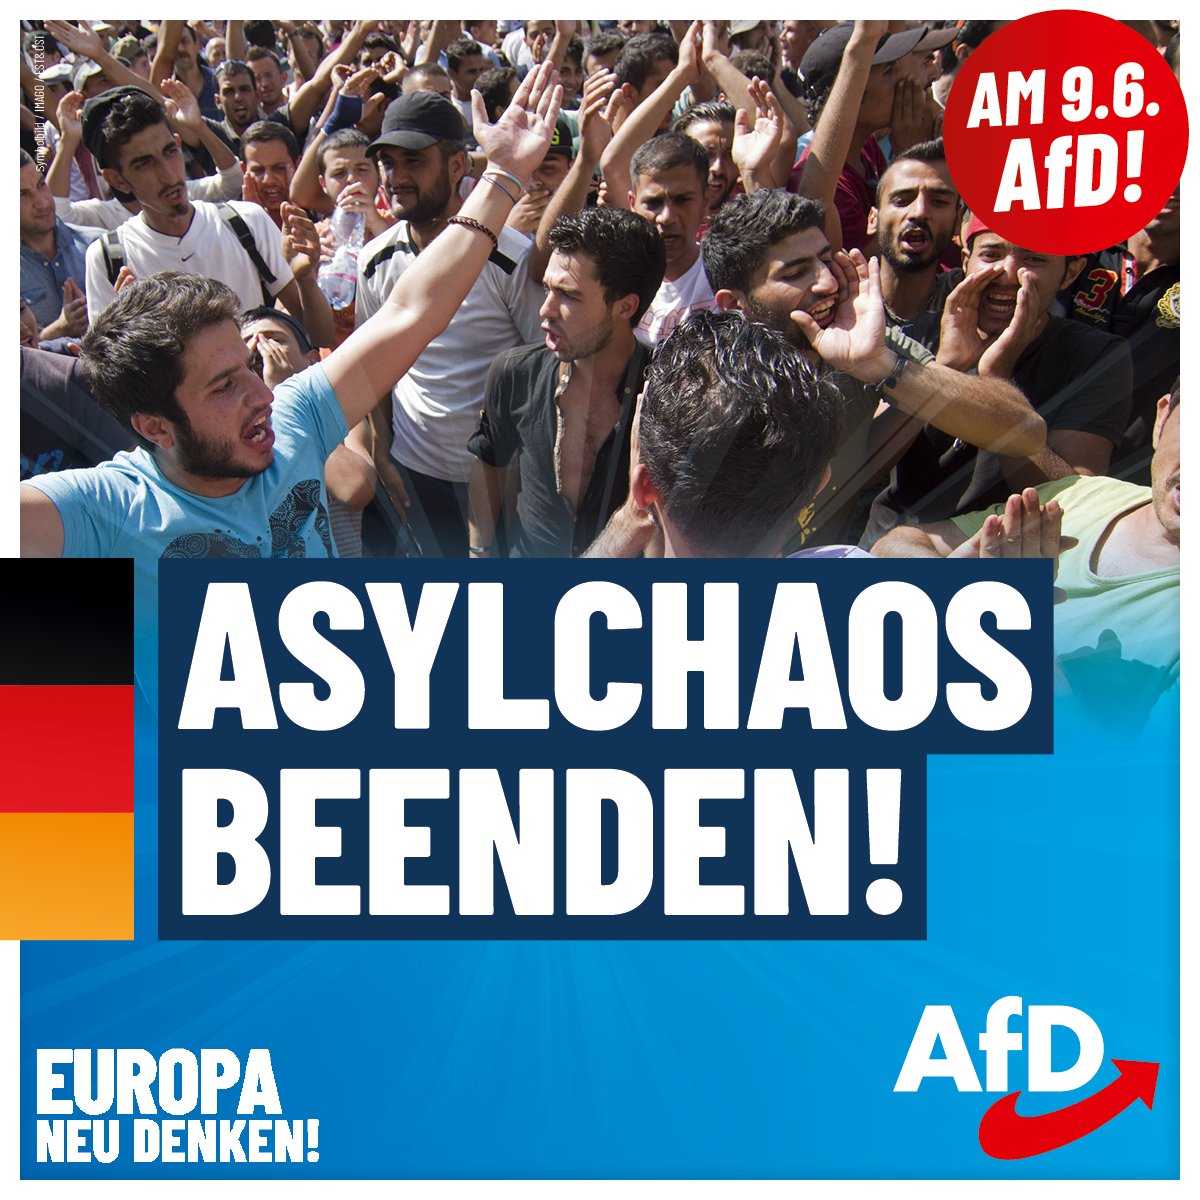 Wusstest Du, wie die AfD das Asylchaos beenden will?  Die AfD fordert, dass die #Nationalstaaten über die Asylpolitik entscheiden. Die #EU hat uns nicht zu diktieren, wen wir aufnehmen! #DeshalbAfD  Informiere Dich jetzt auf afd.de/europa-neu-den…... über unsere Ziele für